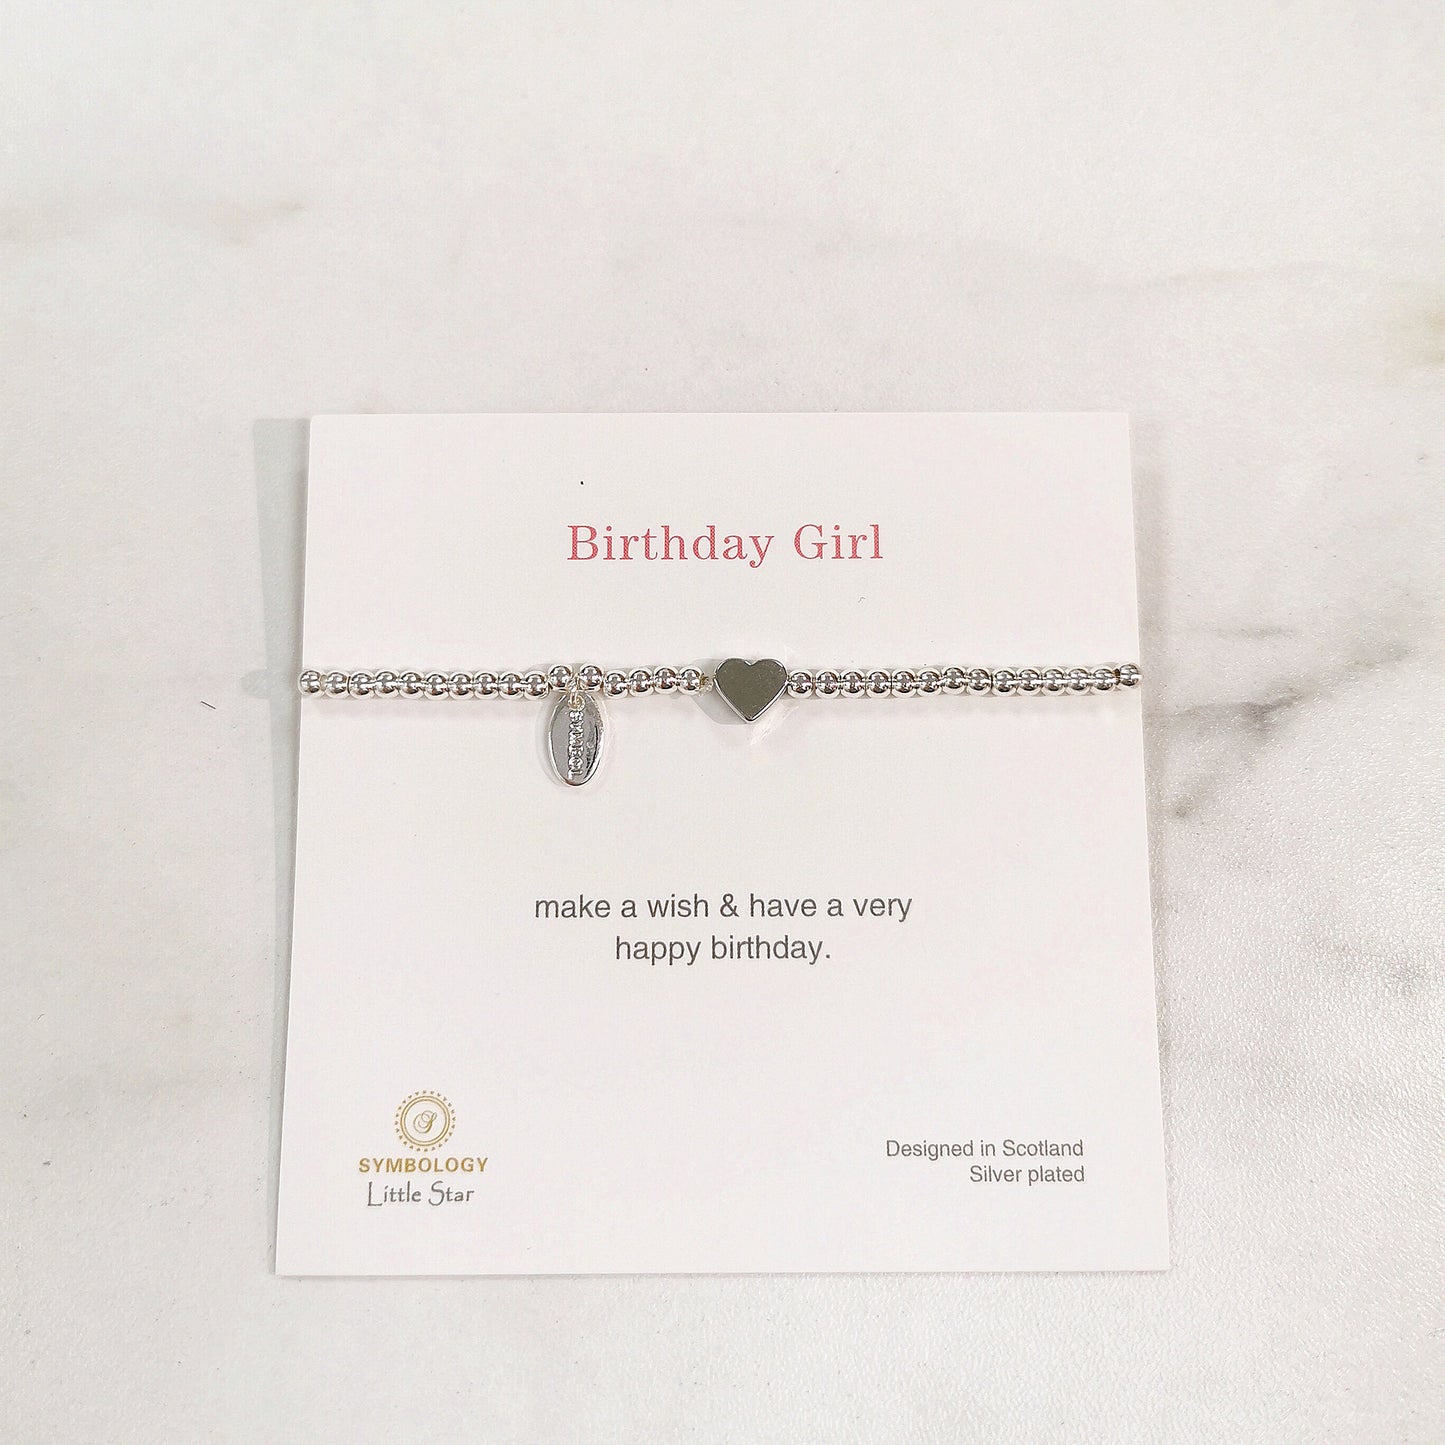 Birthday Girl Bracelet, Silver Beads Charm Bracelet, Sentimental Bracelet for Kids, Birthday Gift for Her, Kids Christmas Gift Under 10